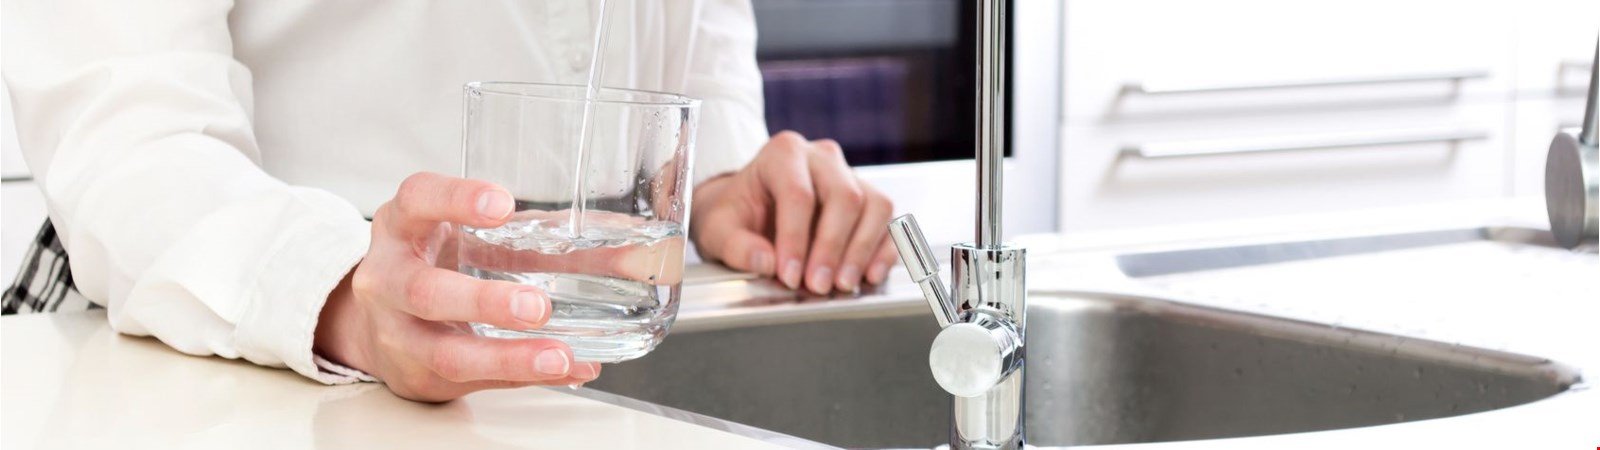 Die unterschätzte Gefahr: Legionellen im Trinkwasser